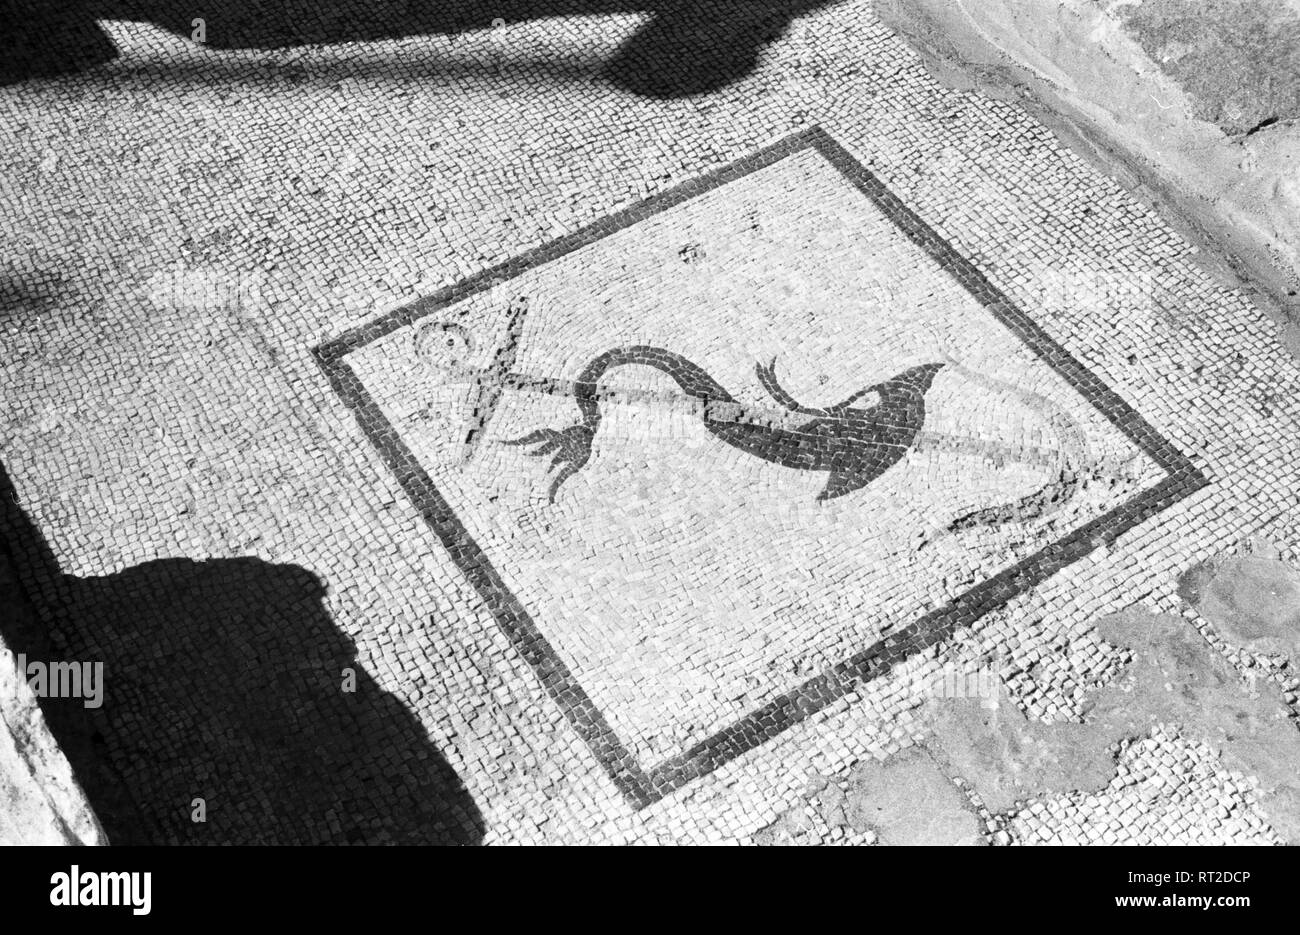 Spanien, Griechenland - Ein Mosaik auf der Insel Delos, Panorama, stellt einen Delphin dar, der sich um einen Anker windet, Panorama, 1950er Jahre. Eine antike Mosaik auf der Insel Delos, ein Delphin Wicklung um einen Anker, Griechenland, angezeigt, auf der Sie Delfine, 1950. Stockfoto